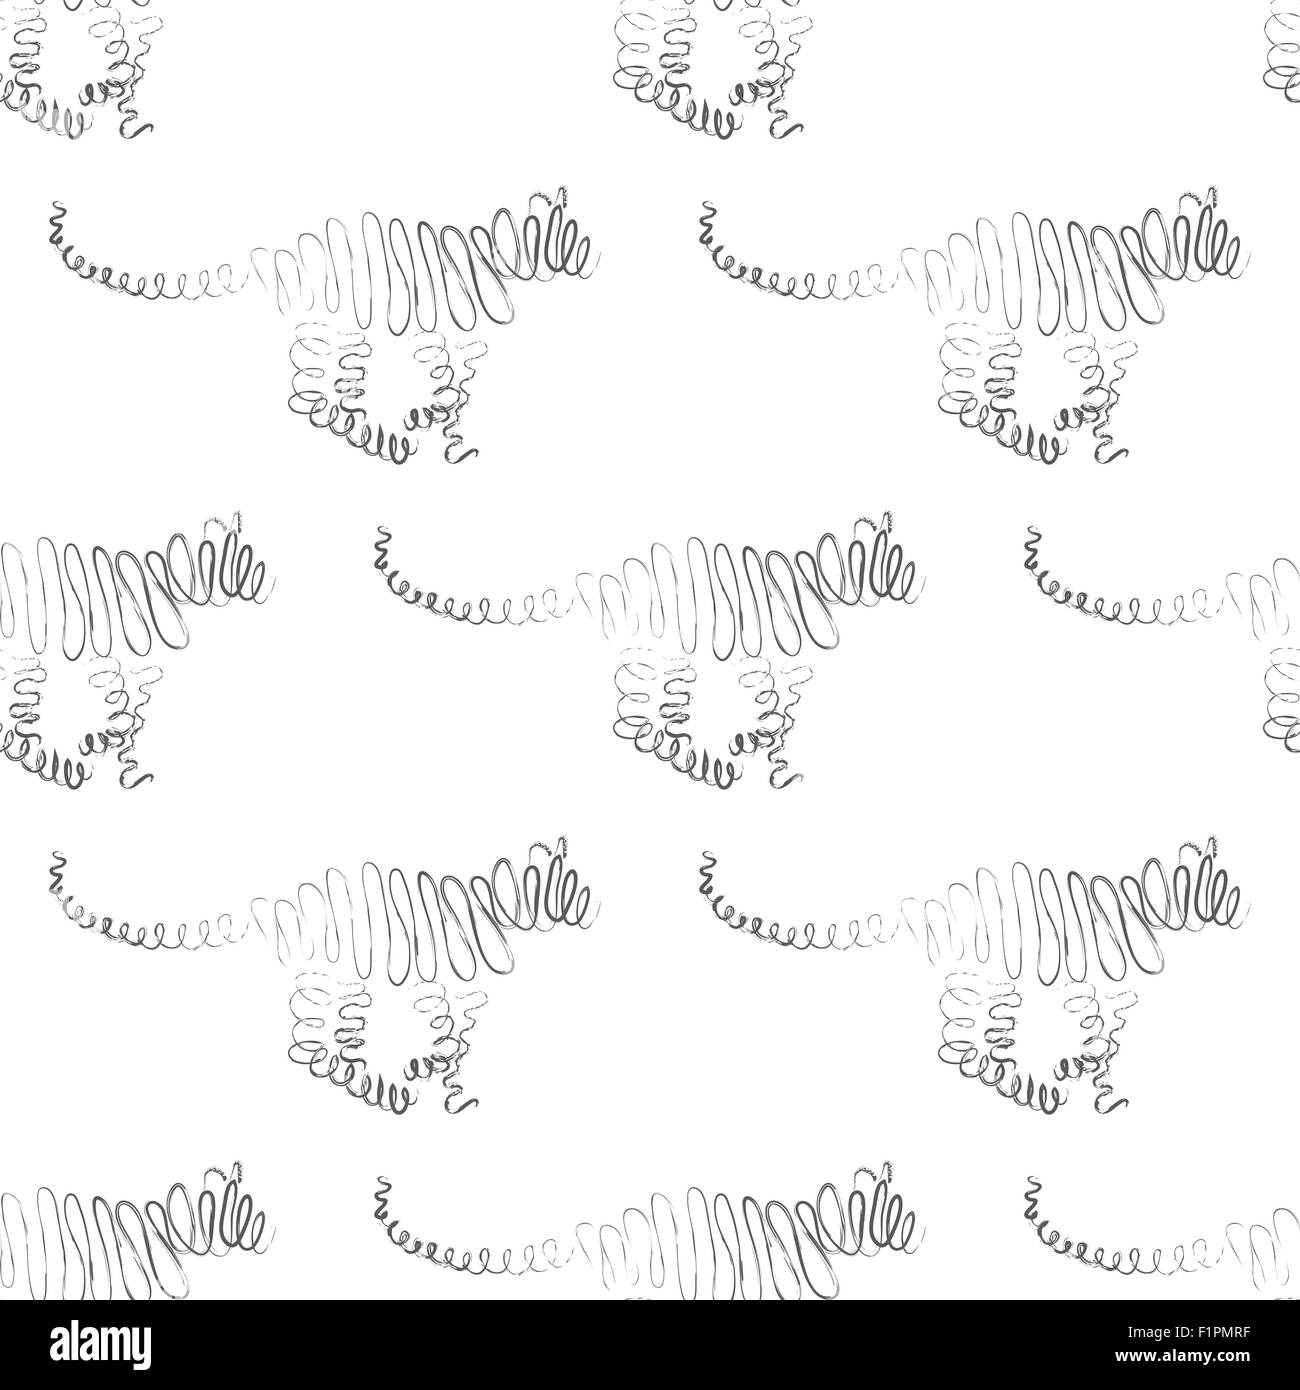 Tiger seamless pattern Vector Illustration Stock Vector